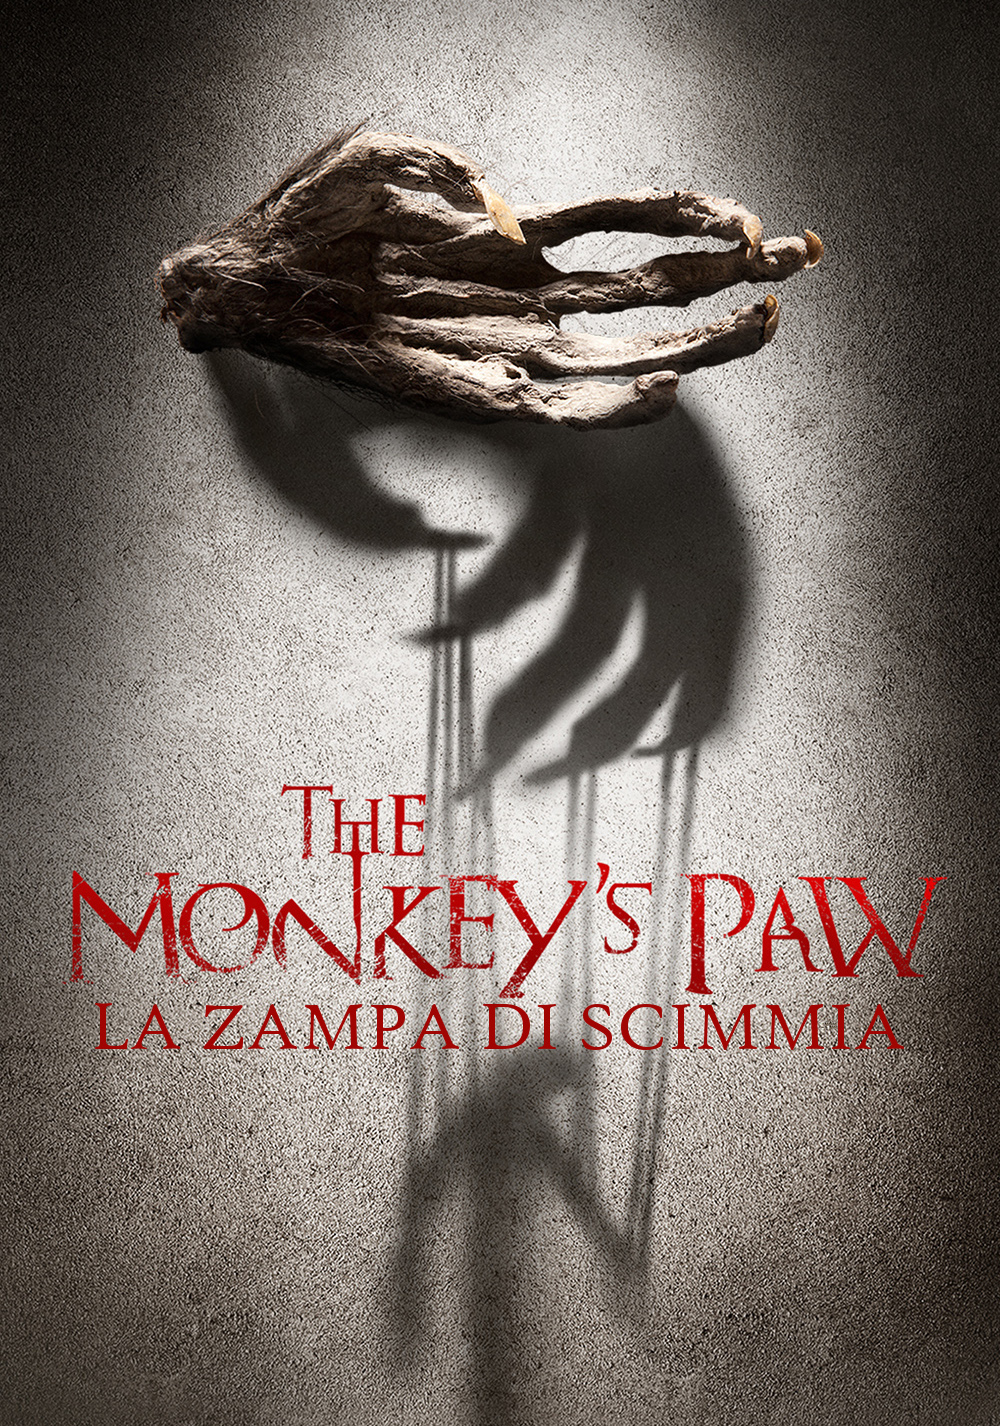 La zampa di scimmia [HD] (2014)